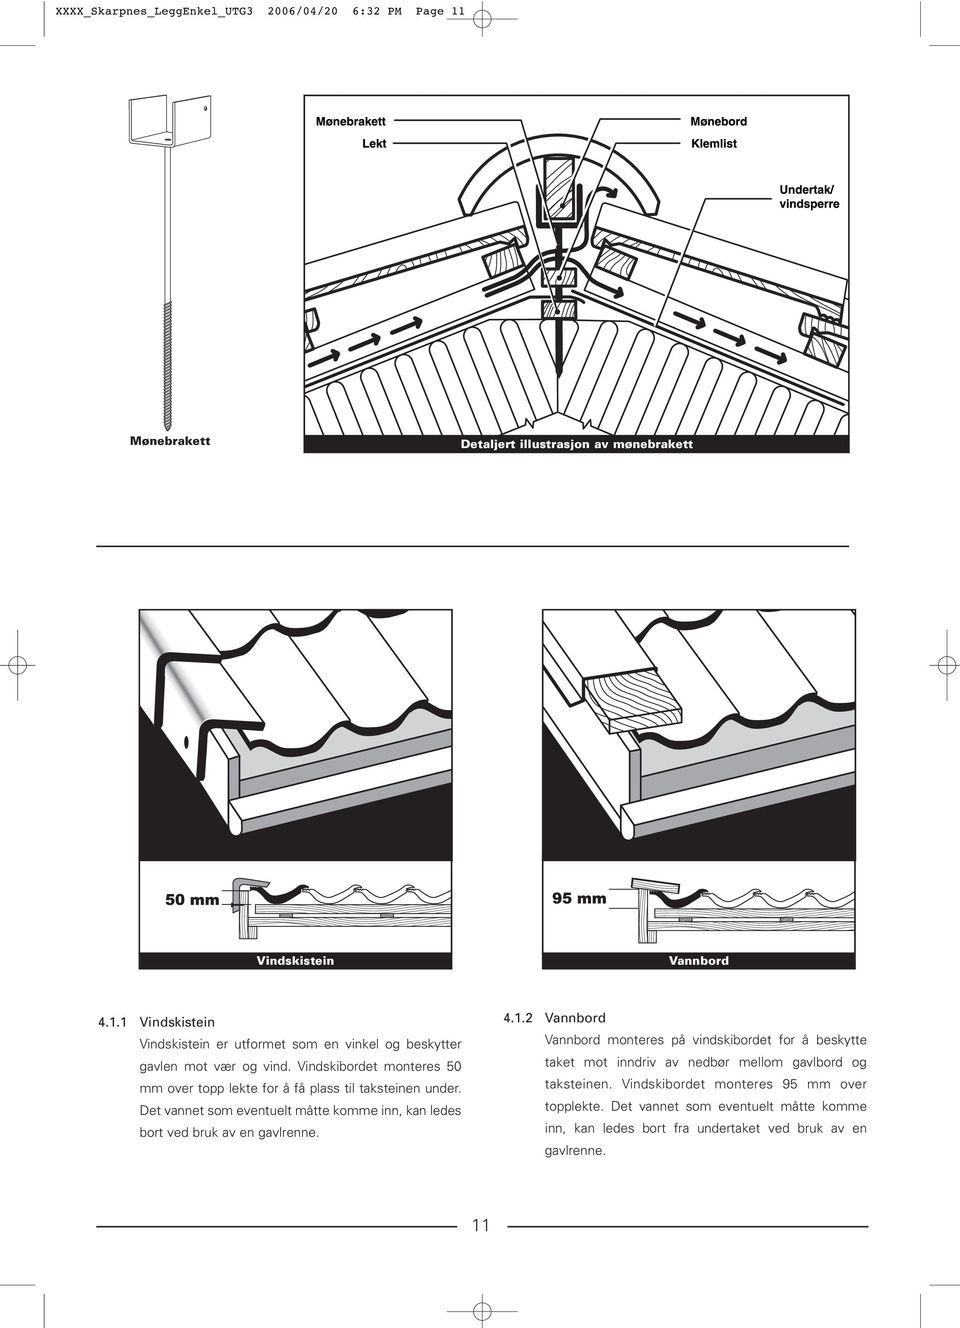 4.1.2 Vannbord Vannbord monteres på vindskibordet for å beskytte taket mot inndriv av nedbør mellom gavlbord og taksteinen.